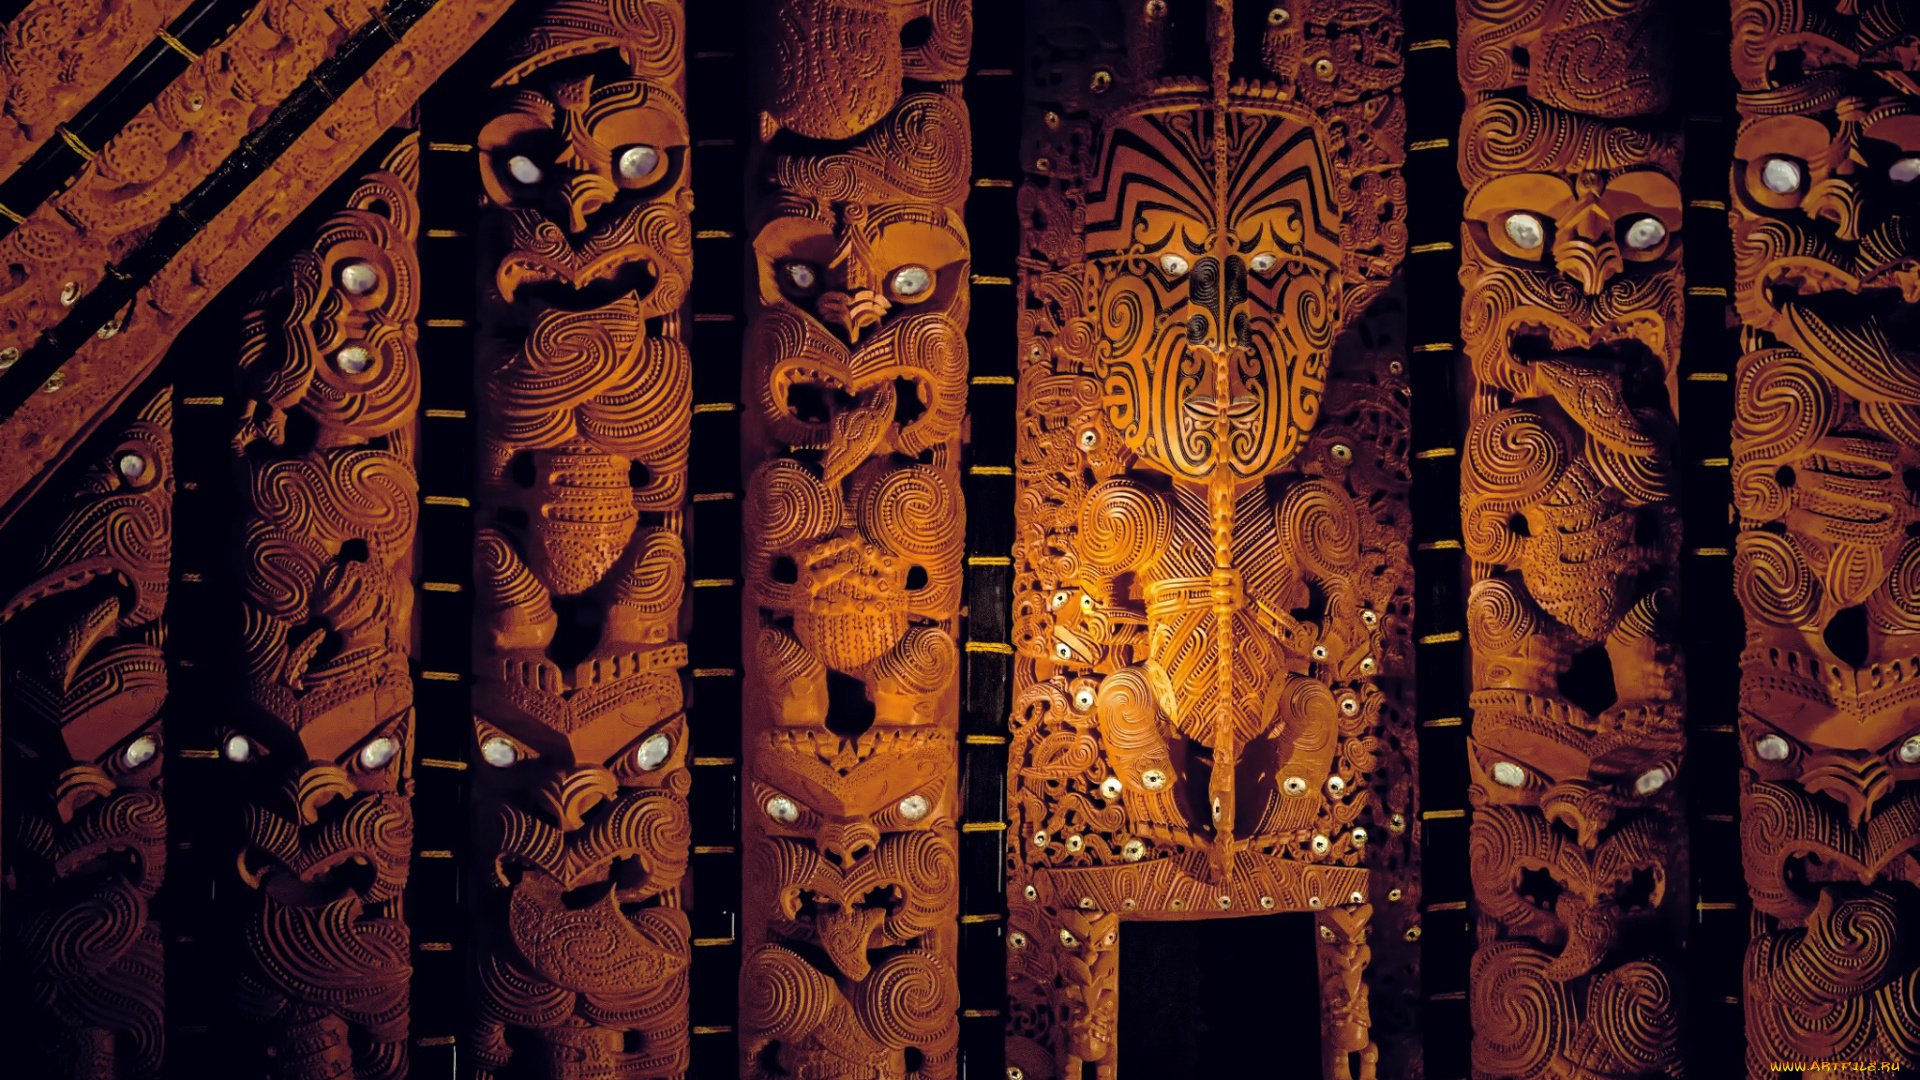 разное, рельефы, , статуи, , музейные, экспонаты, мемориальный, музей, окленда, watching, eyes, wooden, sculptures, new, zealand, maori